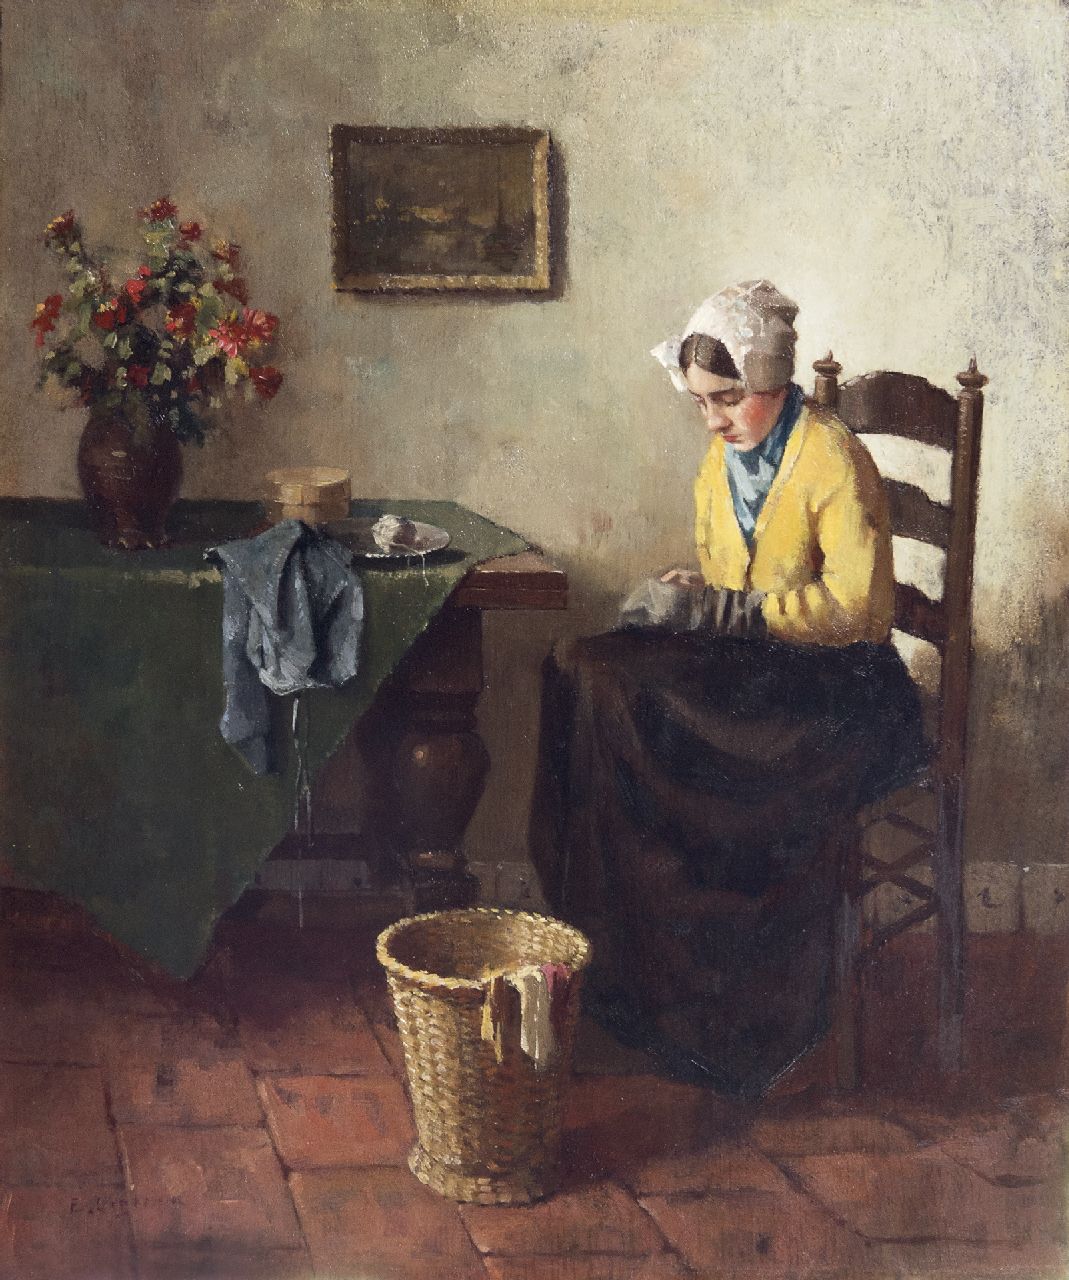 Ligtelijn E.J.  | Evert Jan Ligtelijn, Rustig naaiuurtje, olieverf op paneel 35,0 x 29,3 cm, gesigneerd linksonder